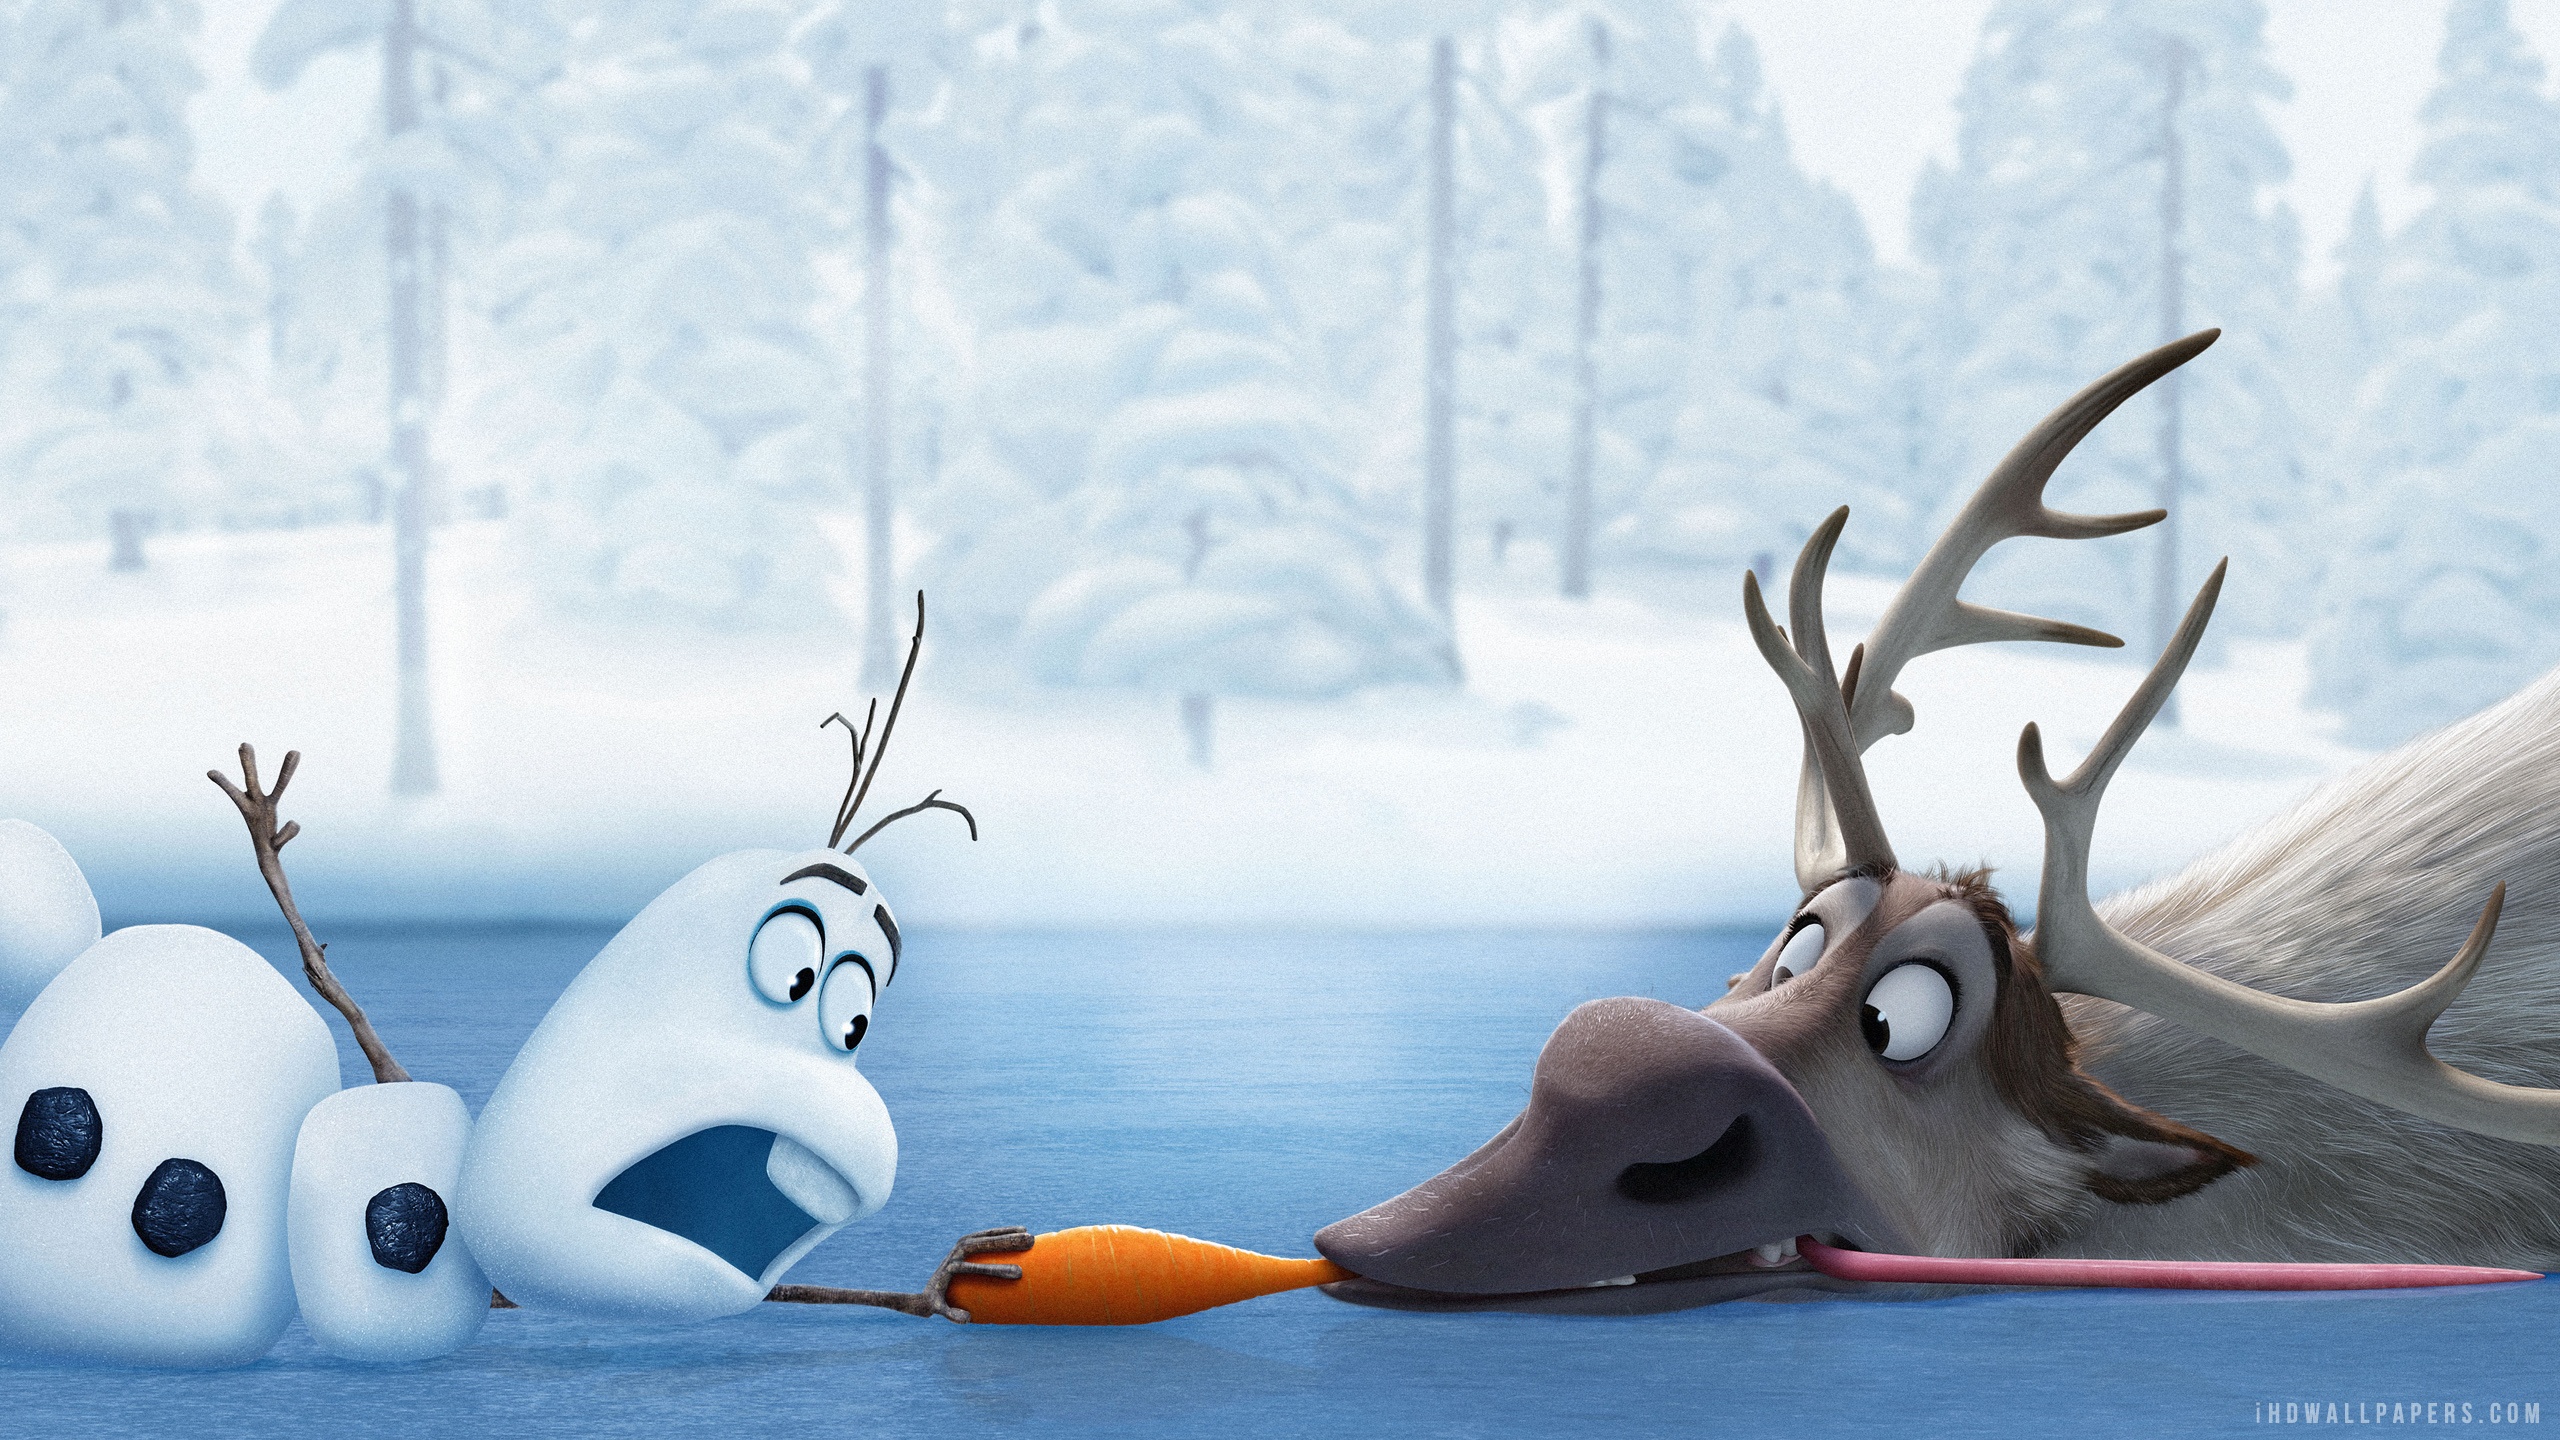 Olaf Sven Frozen HD Wallpaper IHD